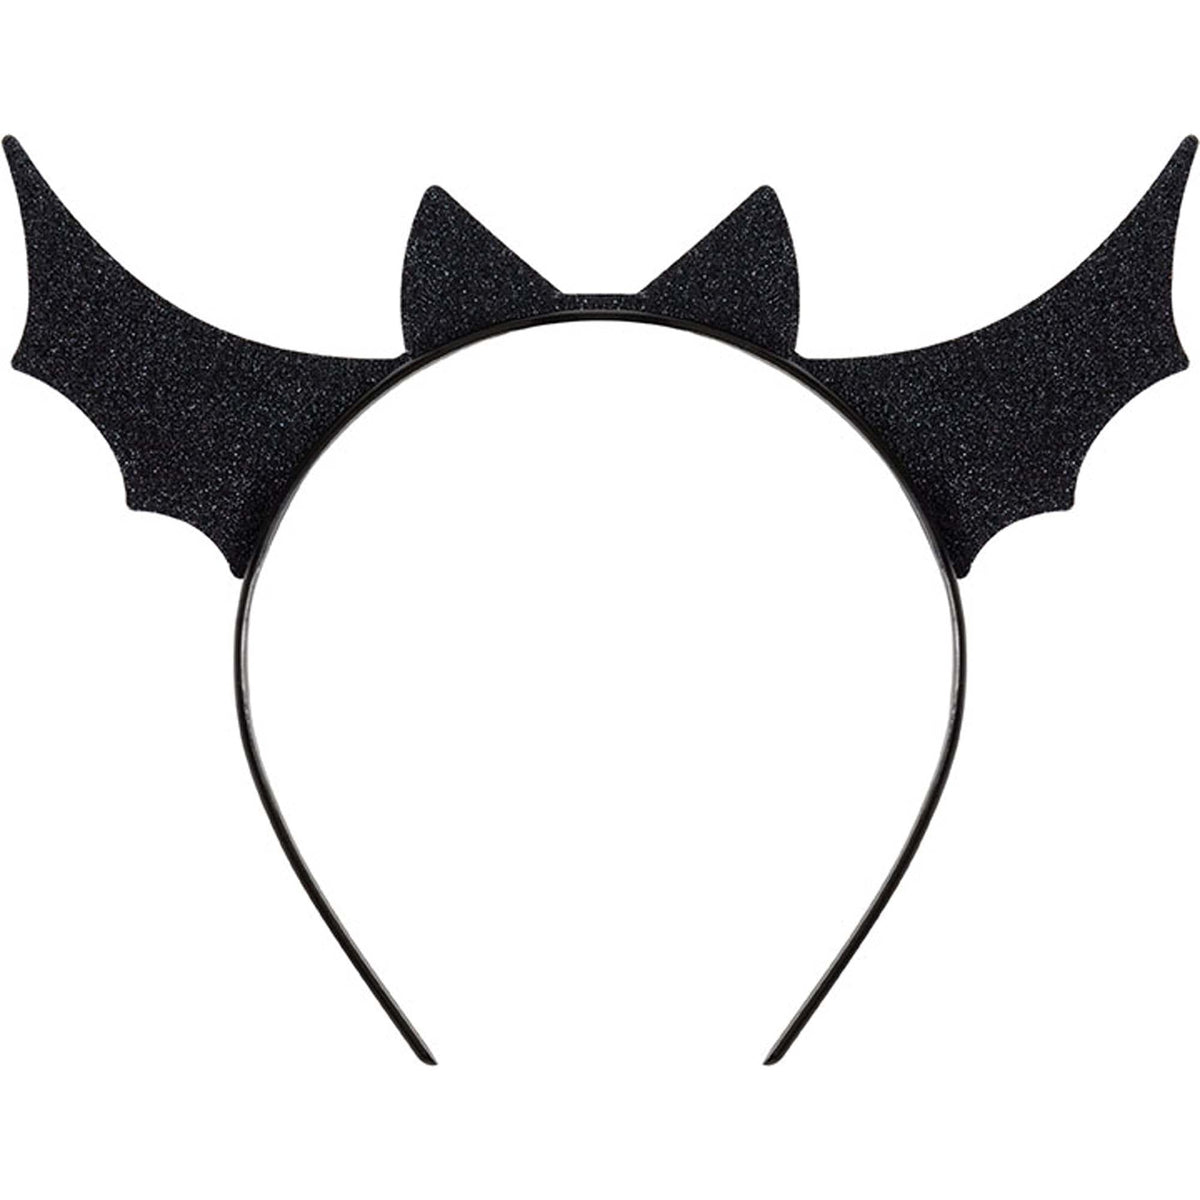 UNIQUE PARTY FAVORS Halloween Bats and Boos Black Bat Headband, 1 Count 011179219117